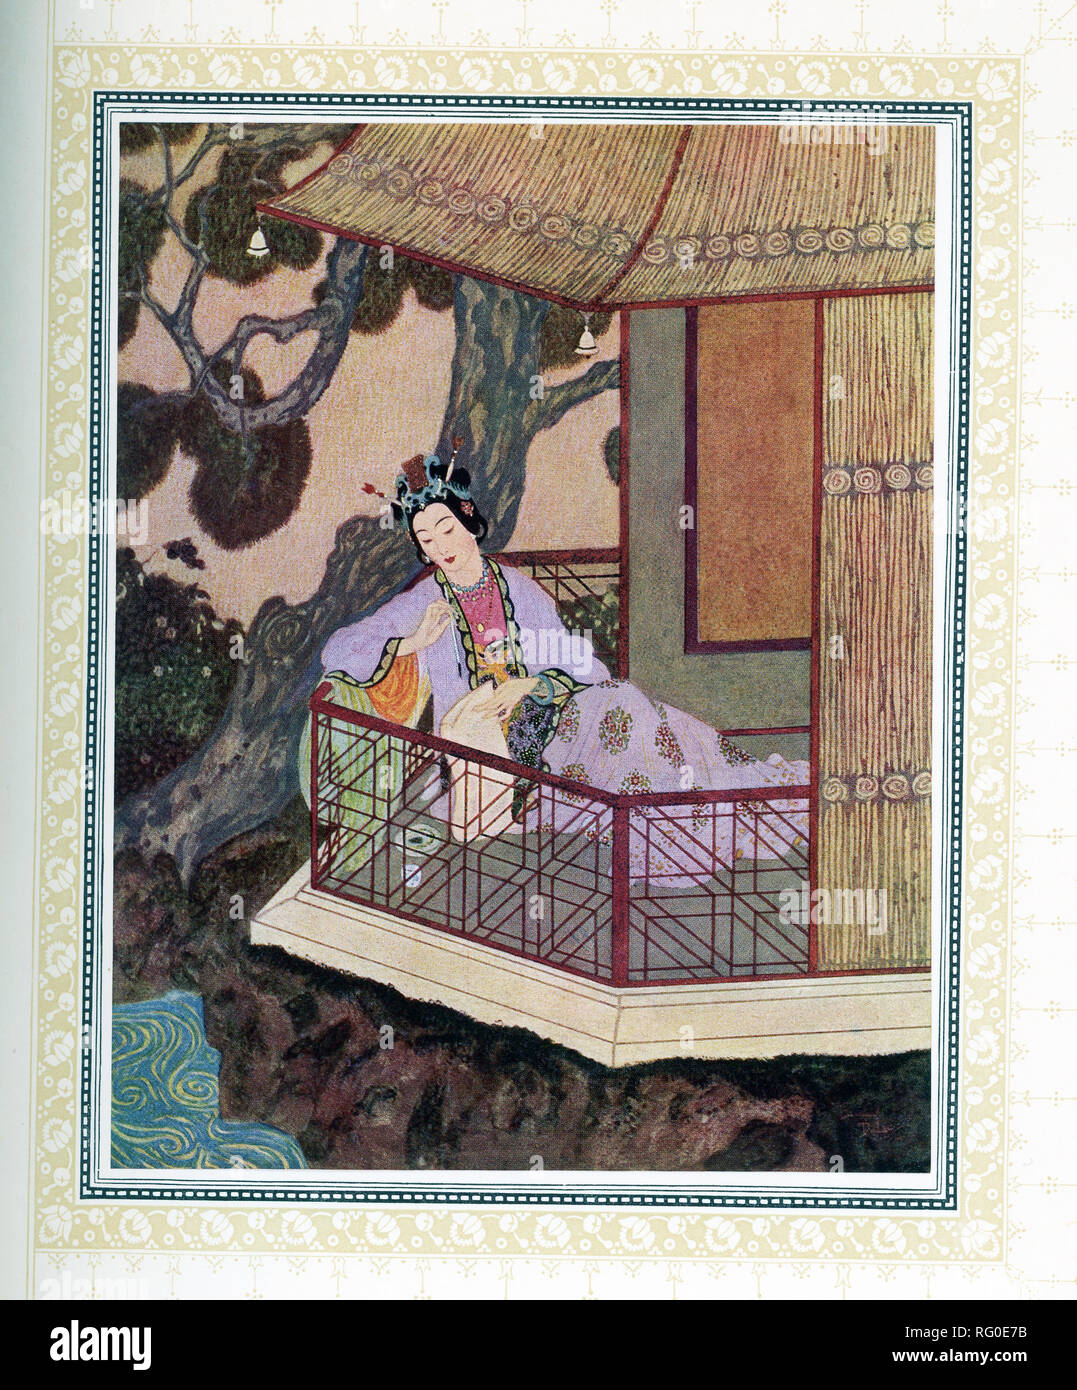 Diese Abbildung ist von dem Buch inbad Sailor ', die um 1914 veröffentlicht  wurde. Es zeigt Lady SZ-el-Budr. Der Illustrator war Edmund Dulac und die  Geschichte aus 1001 Nacht. Aladdin verliebte sich